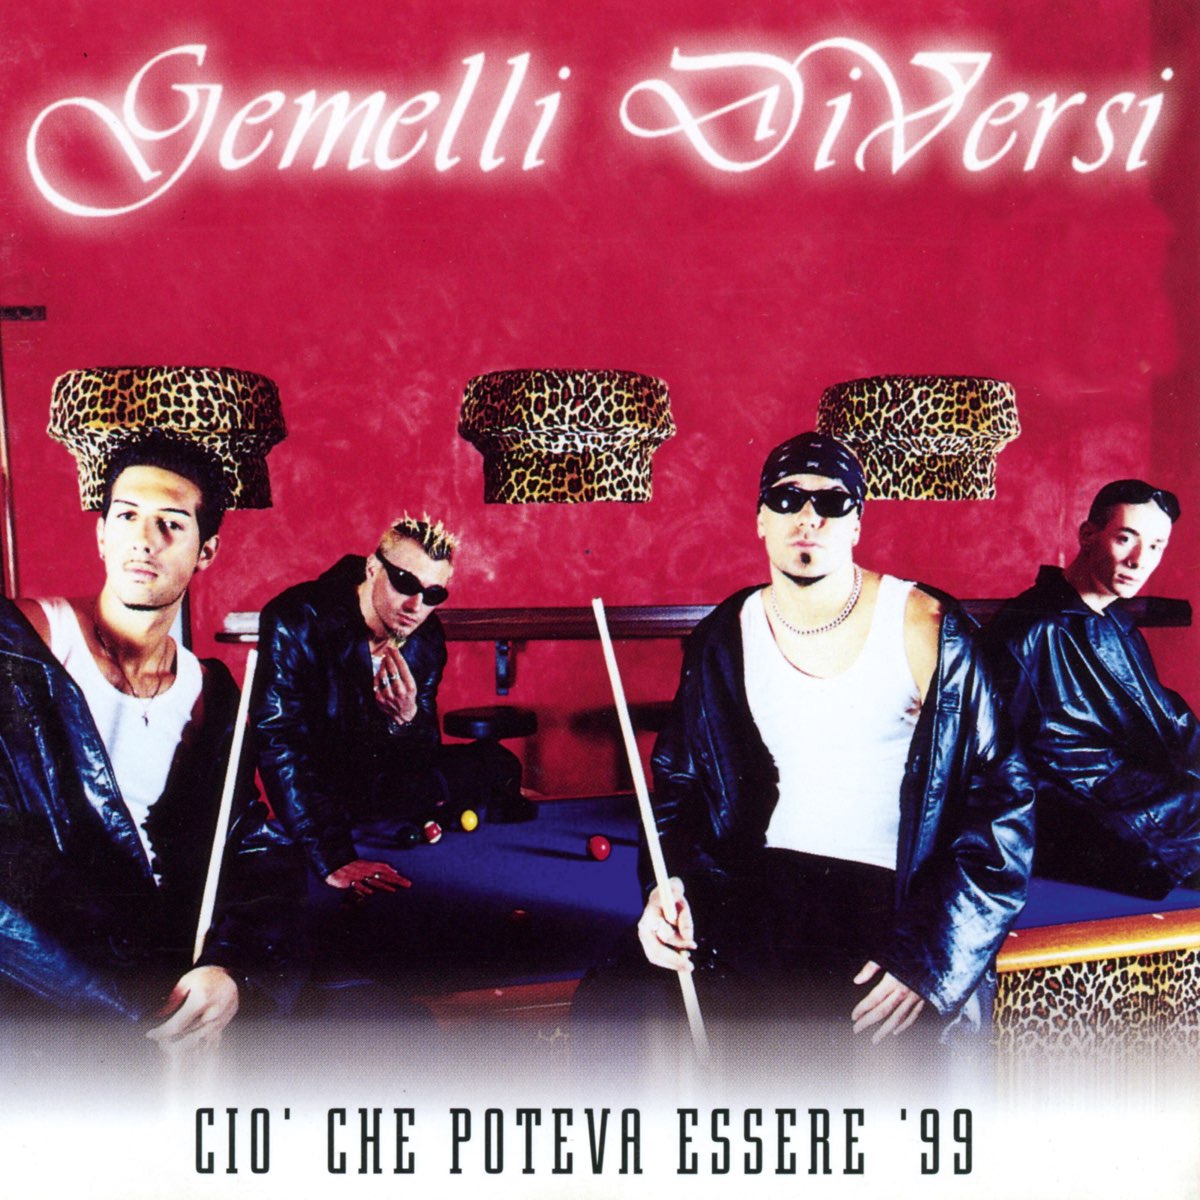 Cio' che poteva essere '99 - Single - Album by Gemelli Diversi - Apple Music